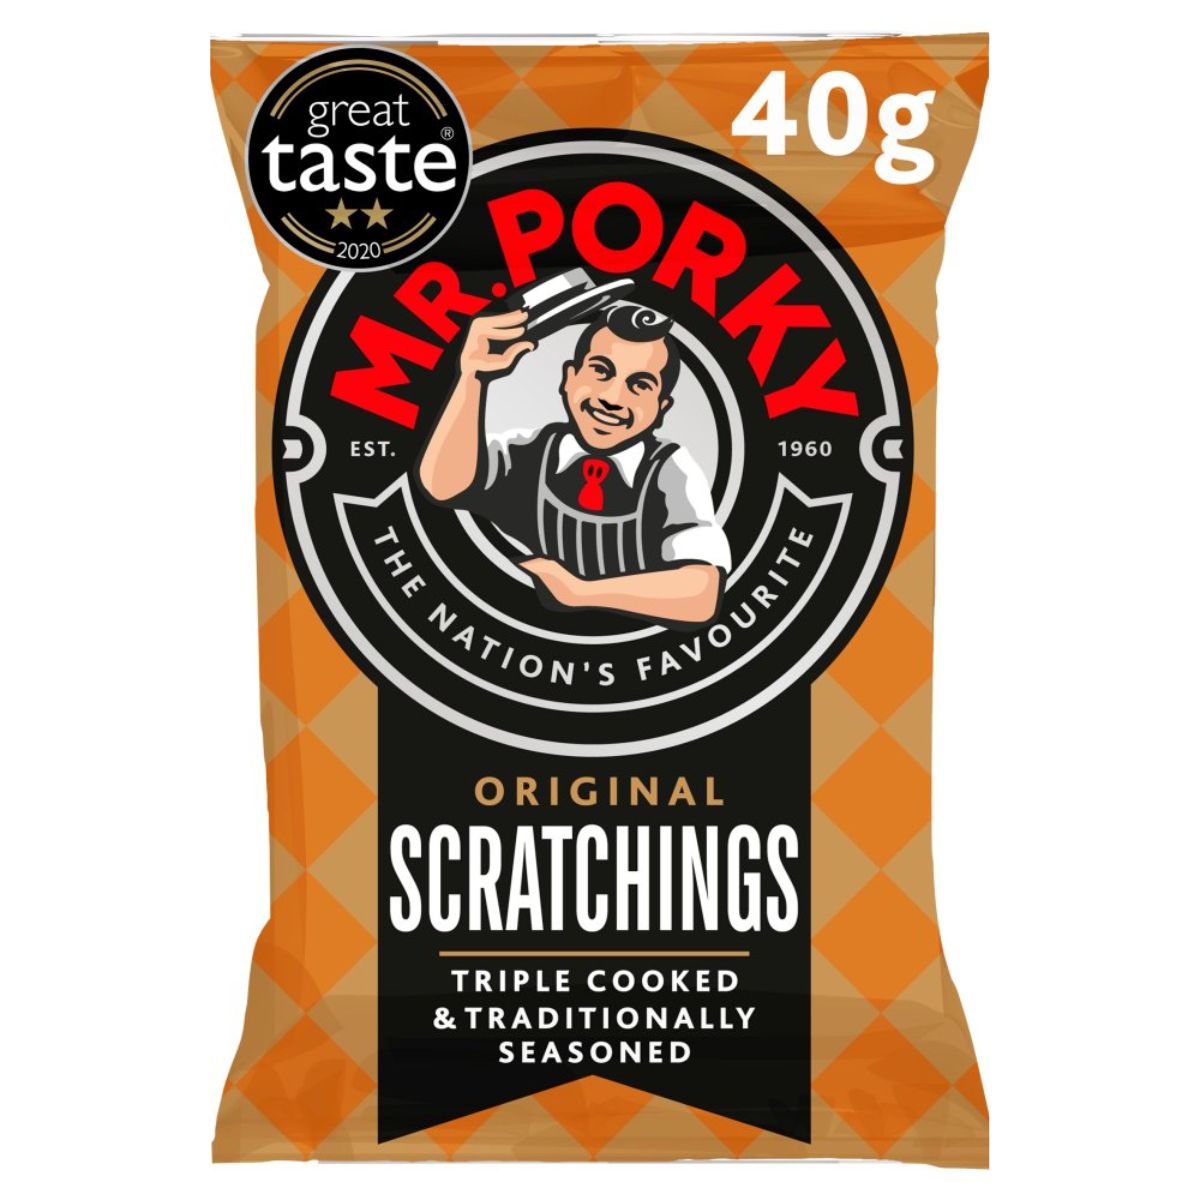 Mr. Porky - Original Scratchings - 40g